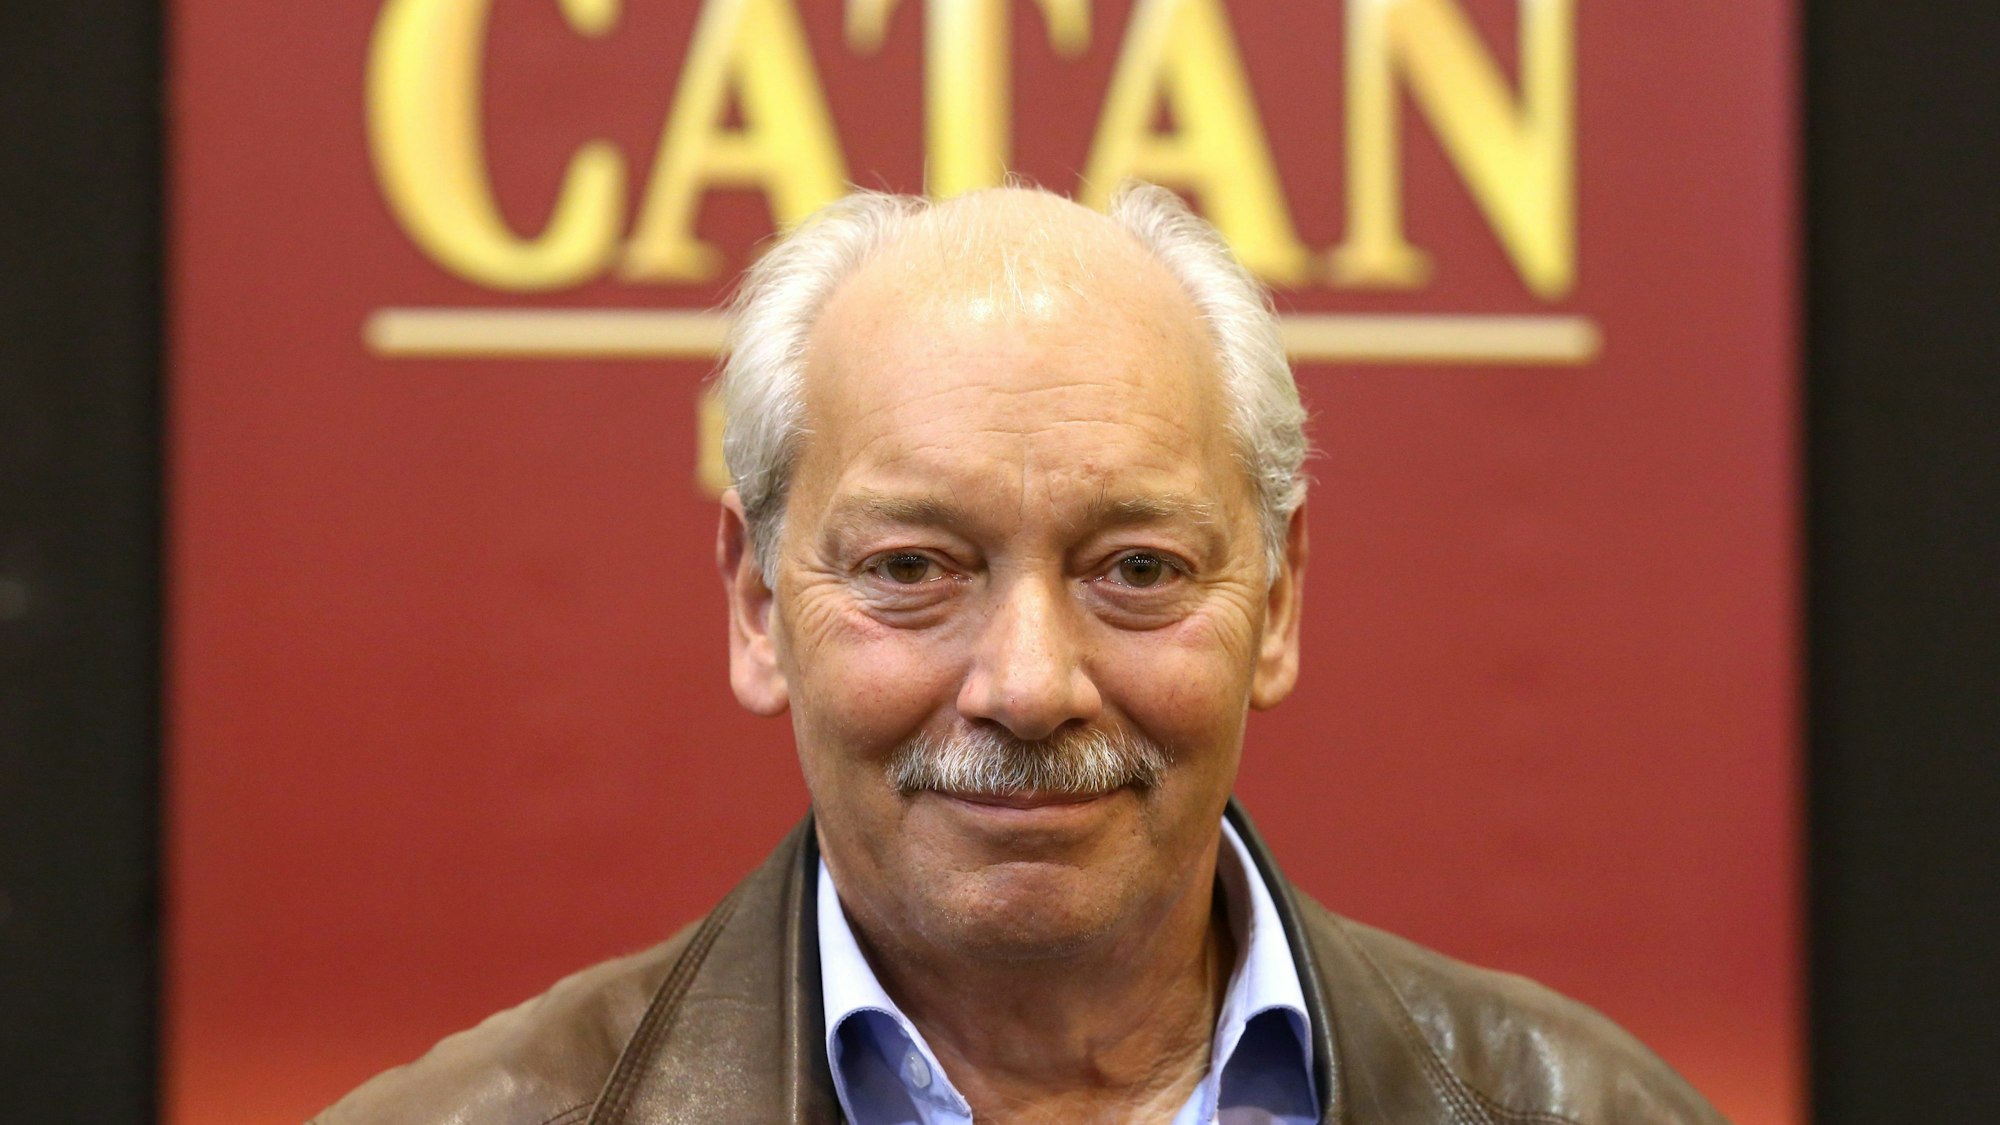 Klaus Teuber, der Erfinder des weltberühmten Strategiespiels „Die Siedler von Catan“, steht vor einer Wand mit der Aufschrift „Catan“.